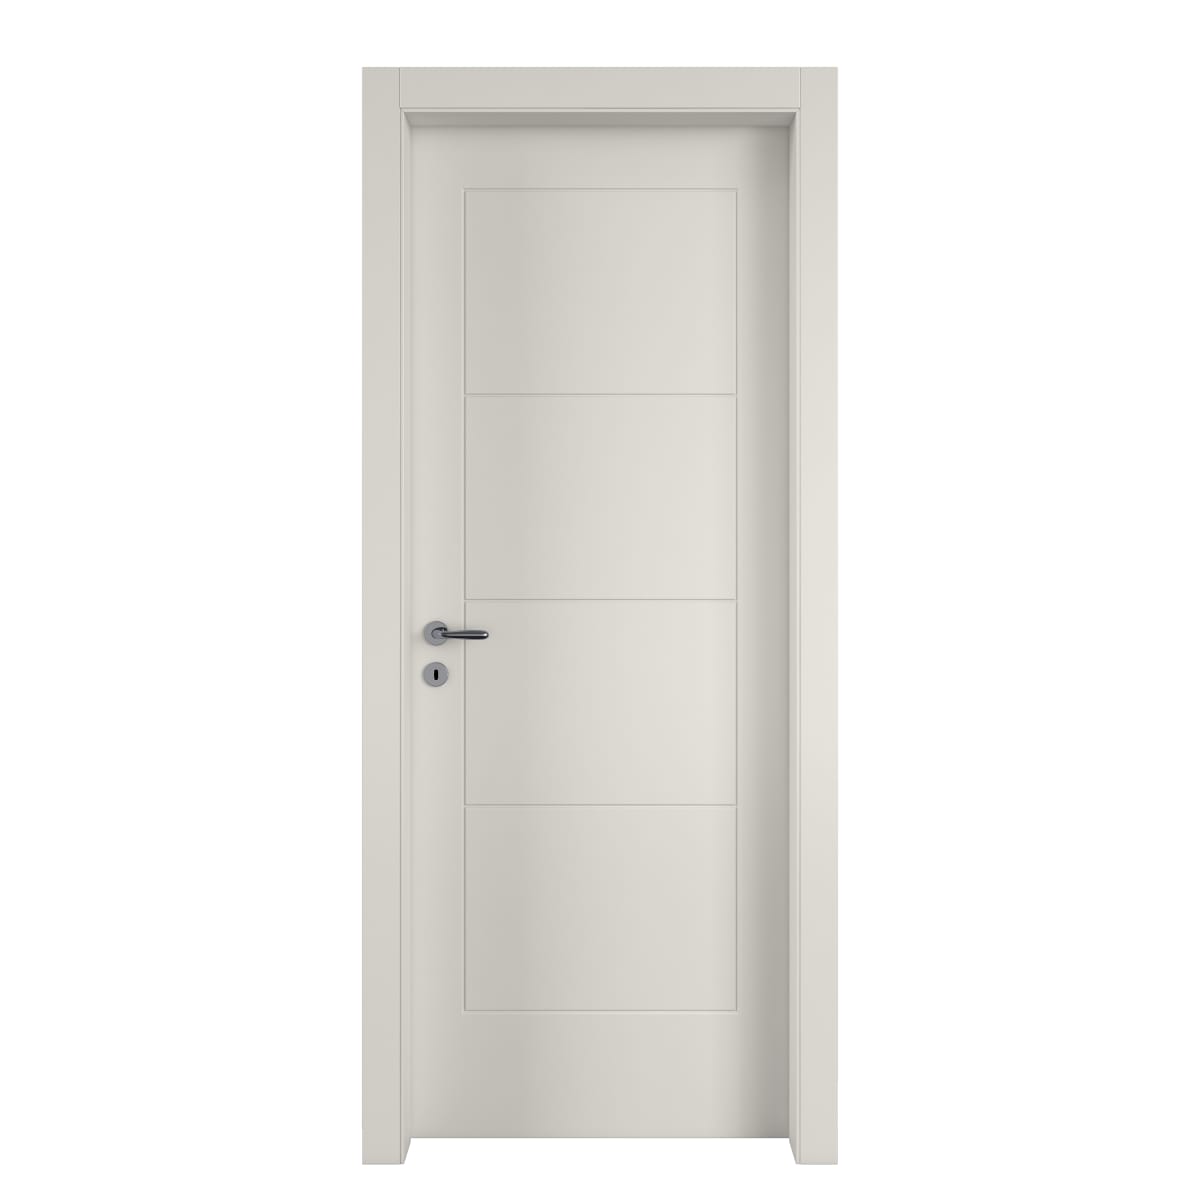 WHITE RIBERA DOOR 90X210 RIGHT